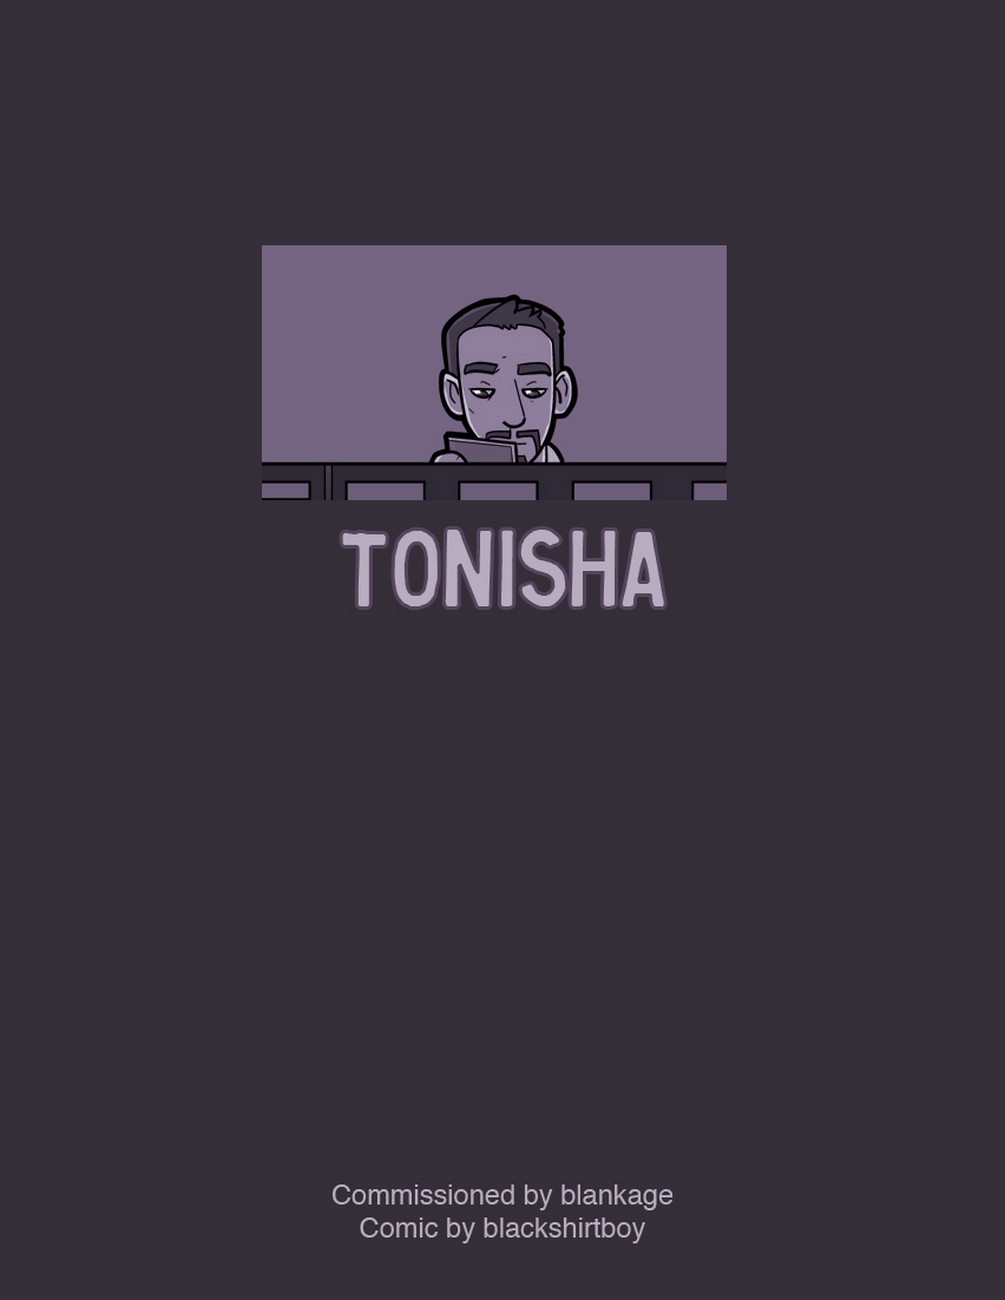 Tonisha00